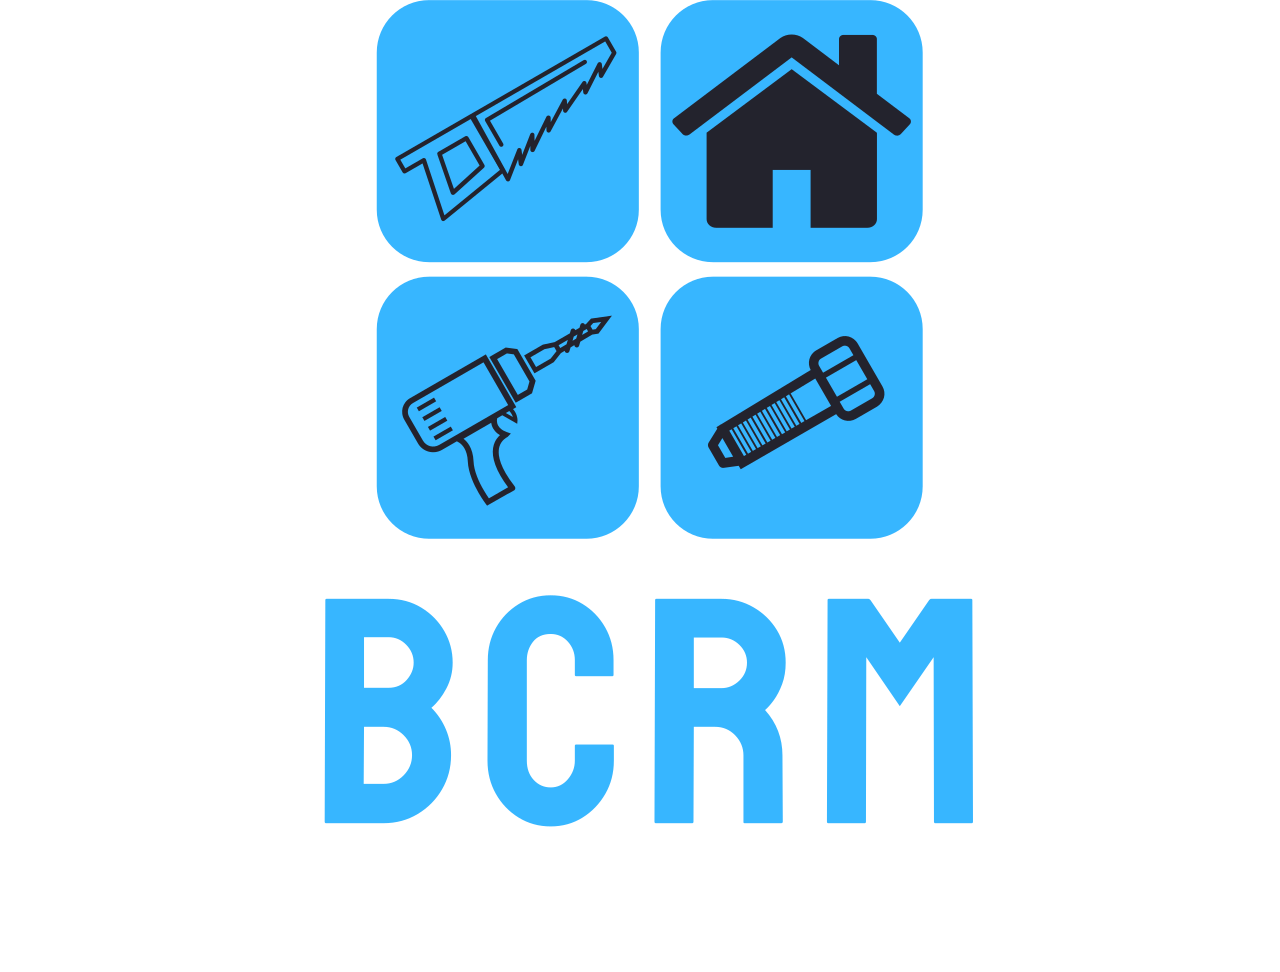 BCRM's web page